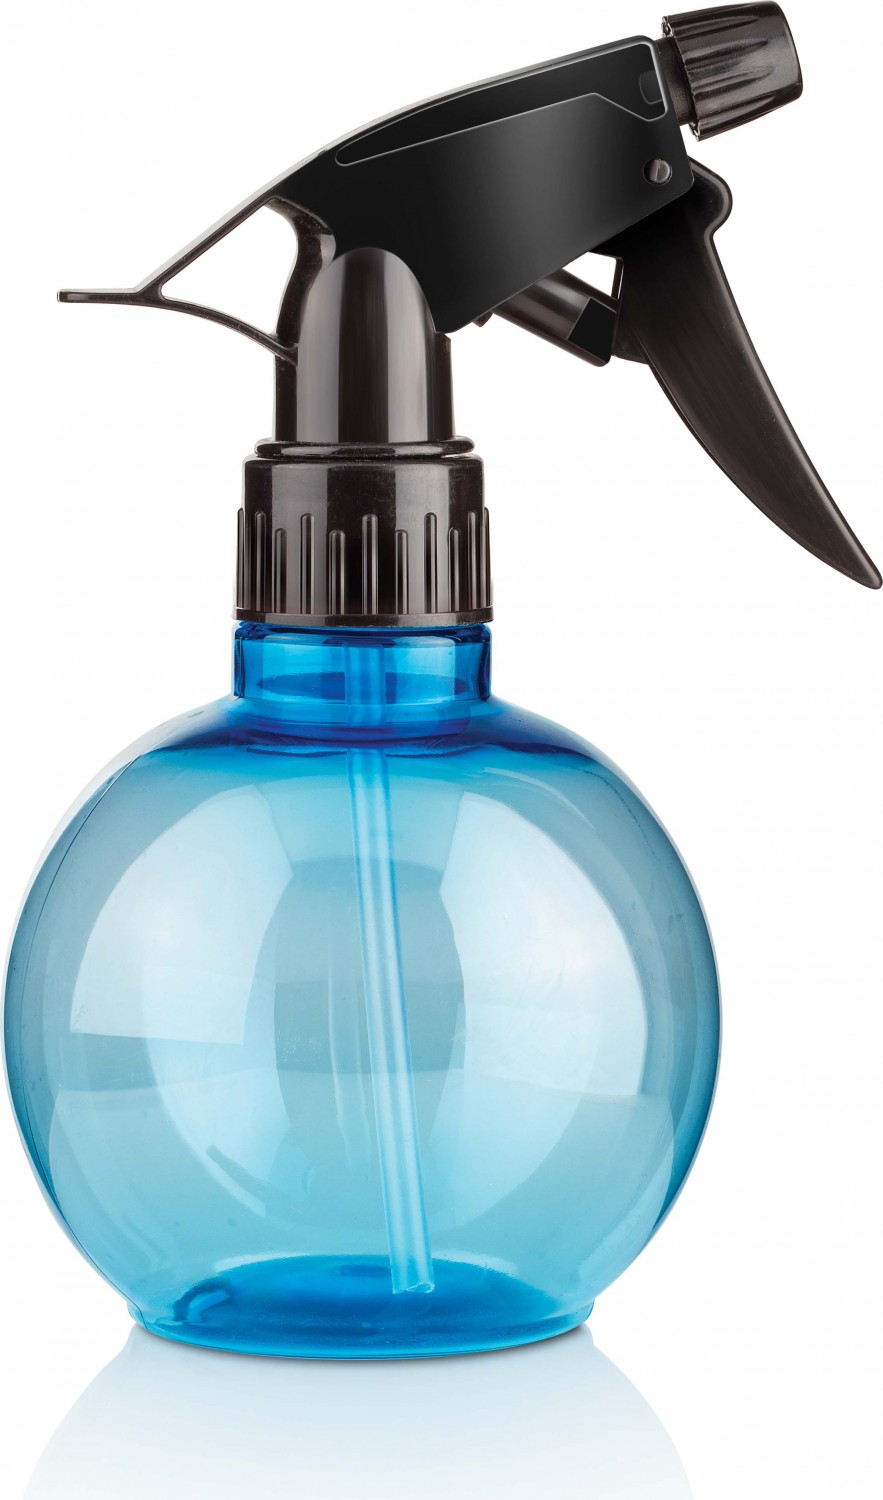  XanitaliaPro Bowl Spray Bottle in Blue 